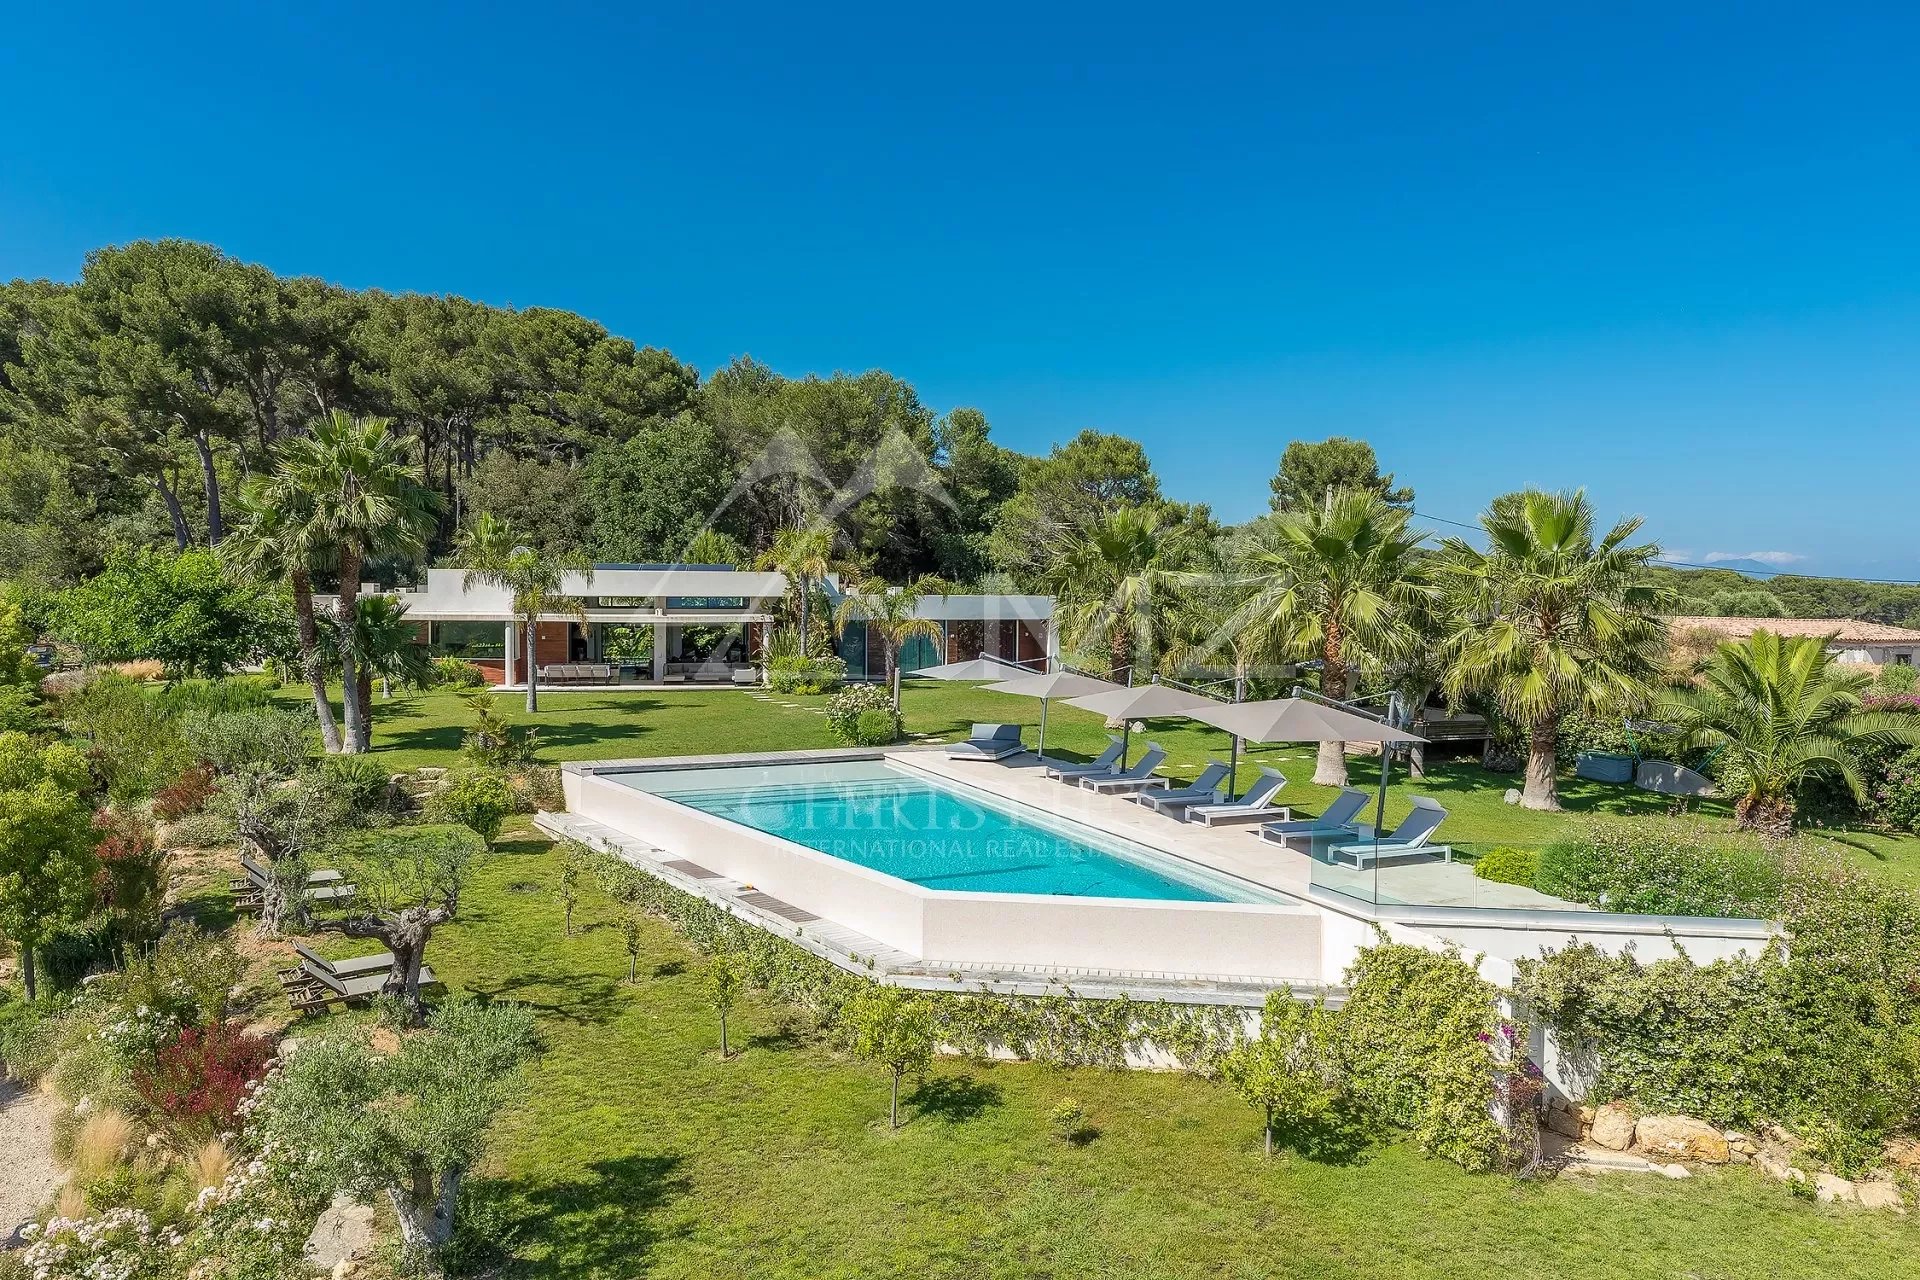 Antibes - Architect's villa